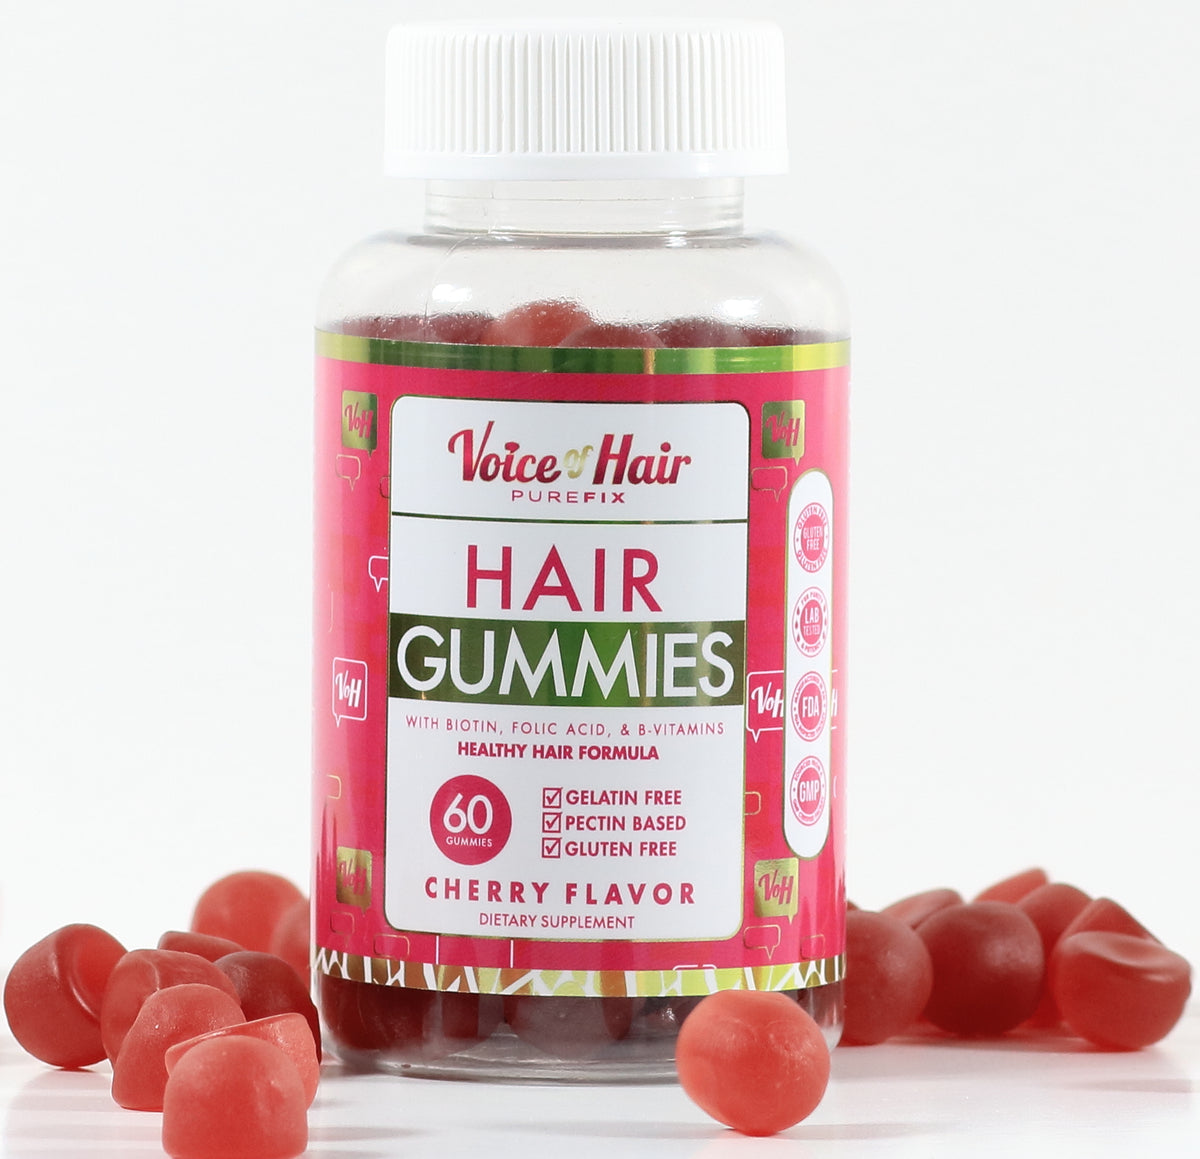 Hair Gummies – Voice of Hair